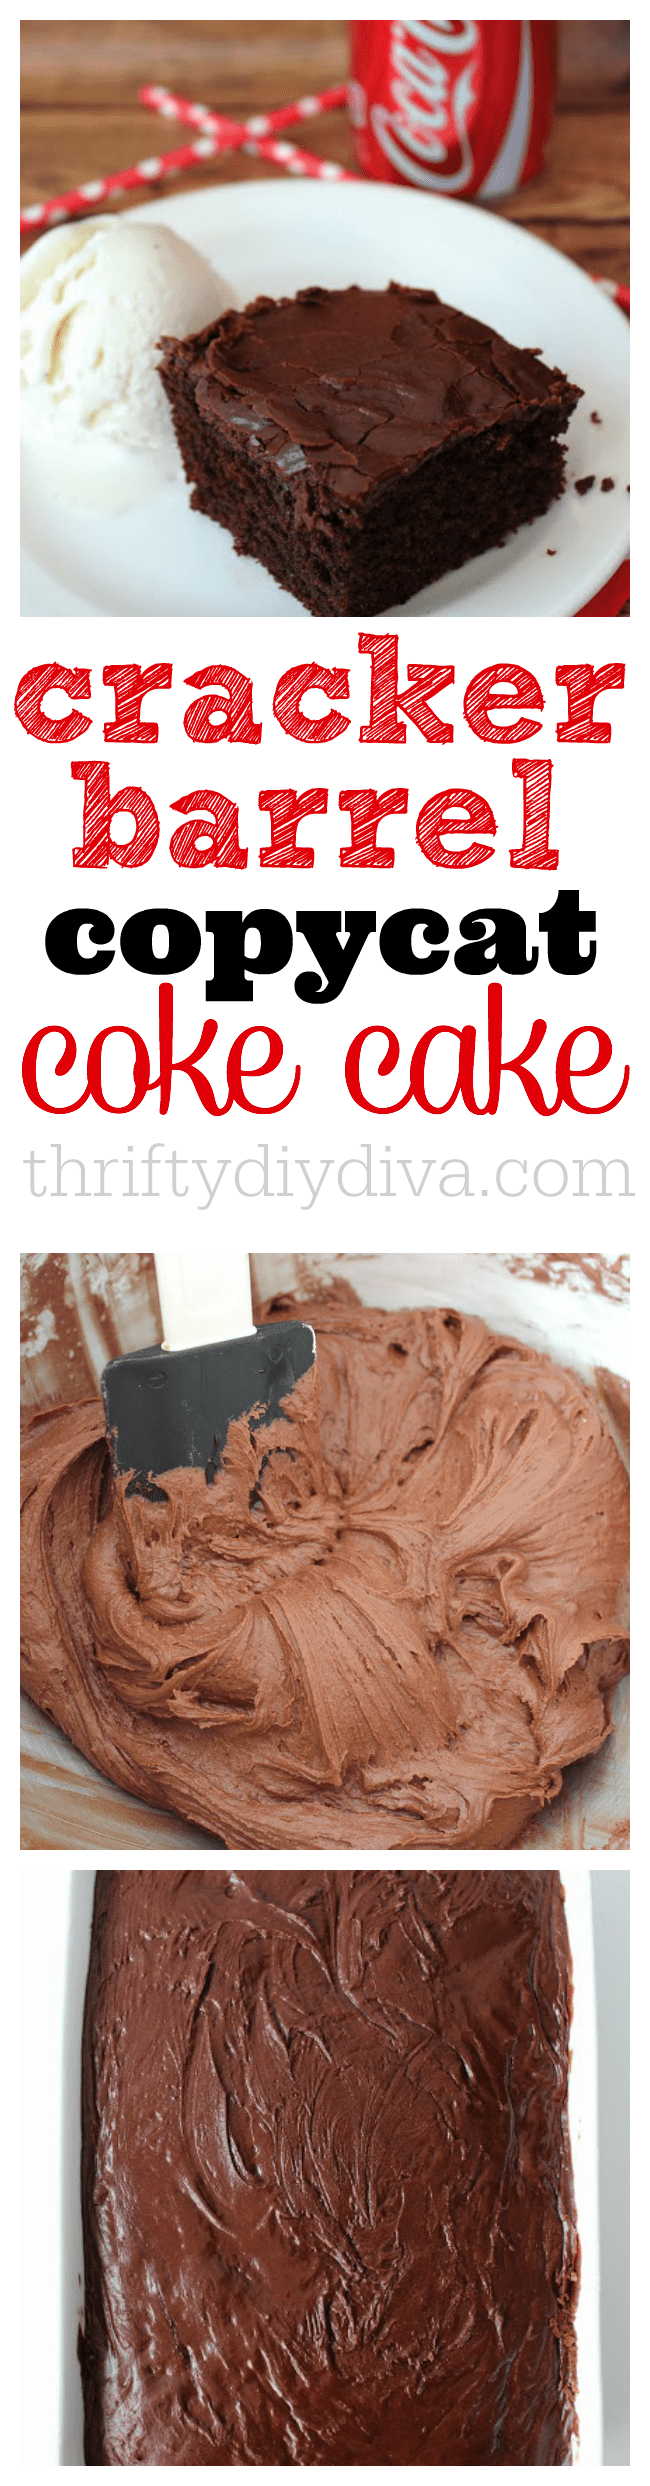 Copycat Cracker Barrel Coke Cake Recipes